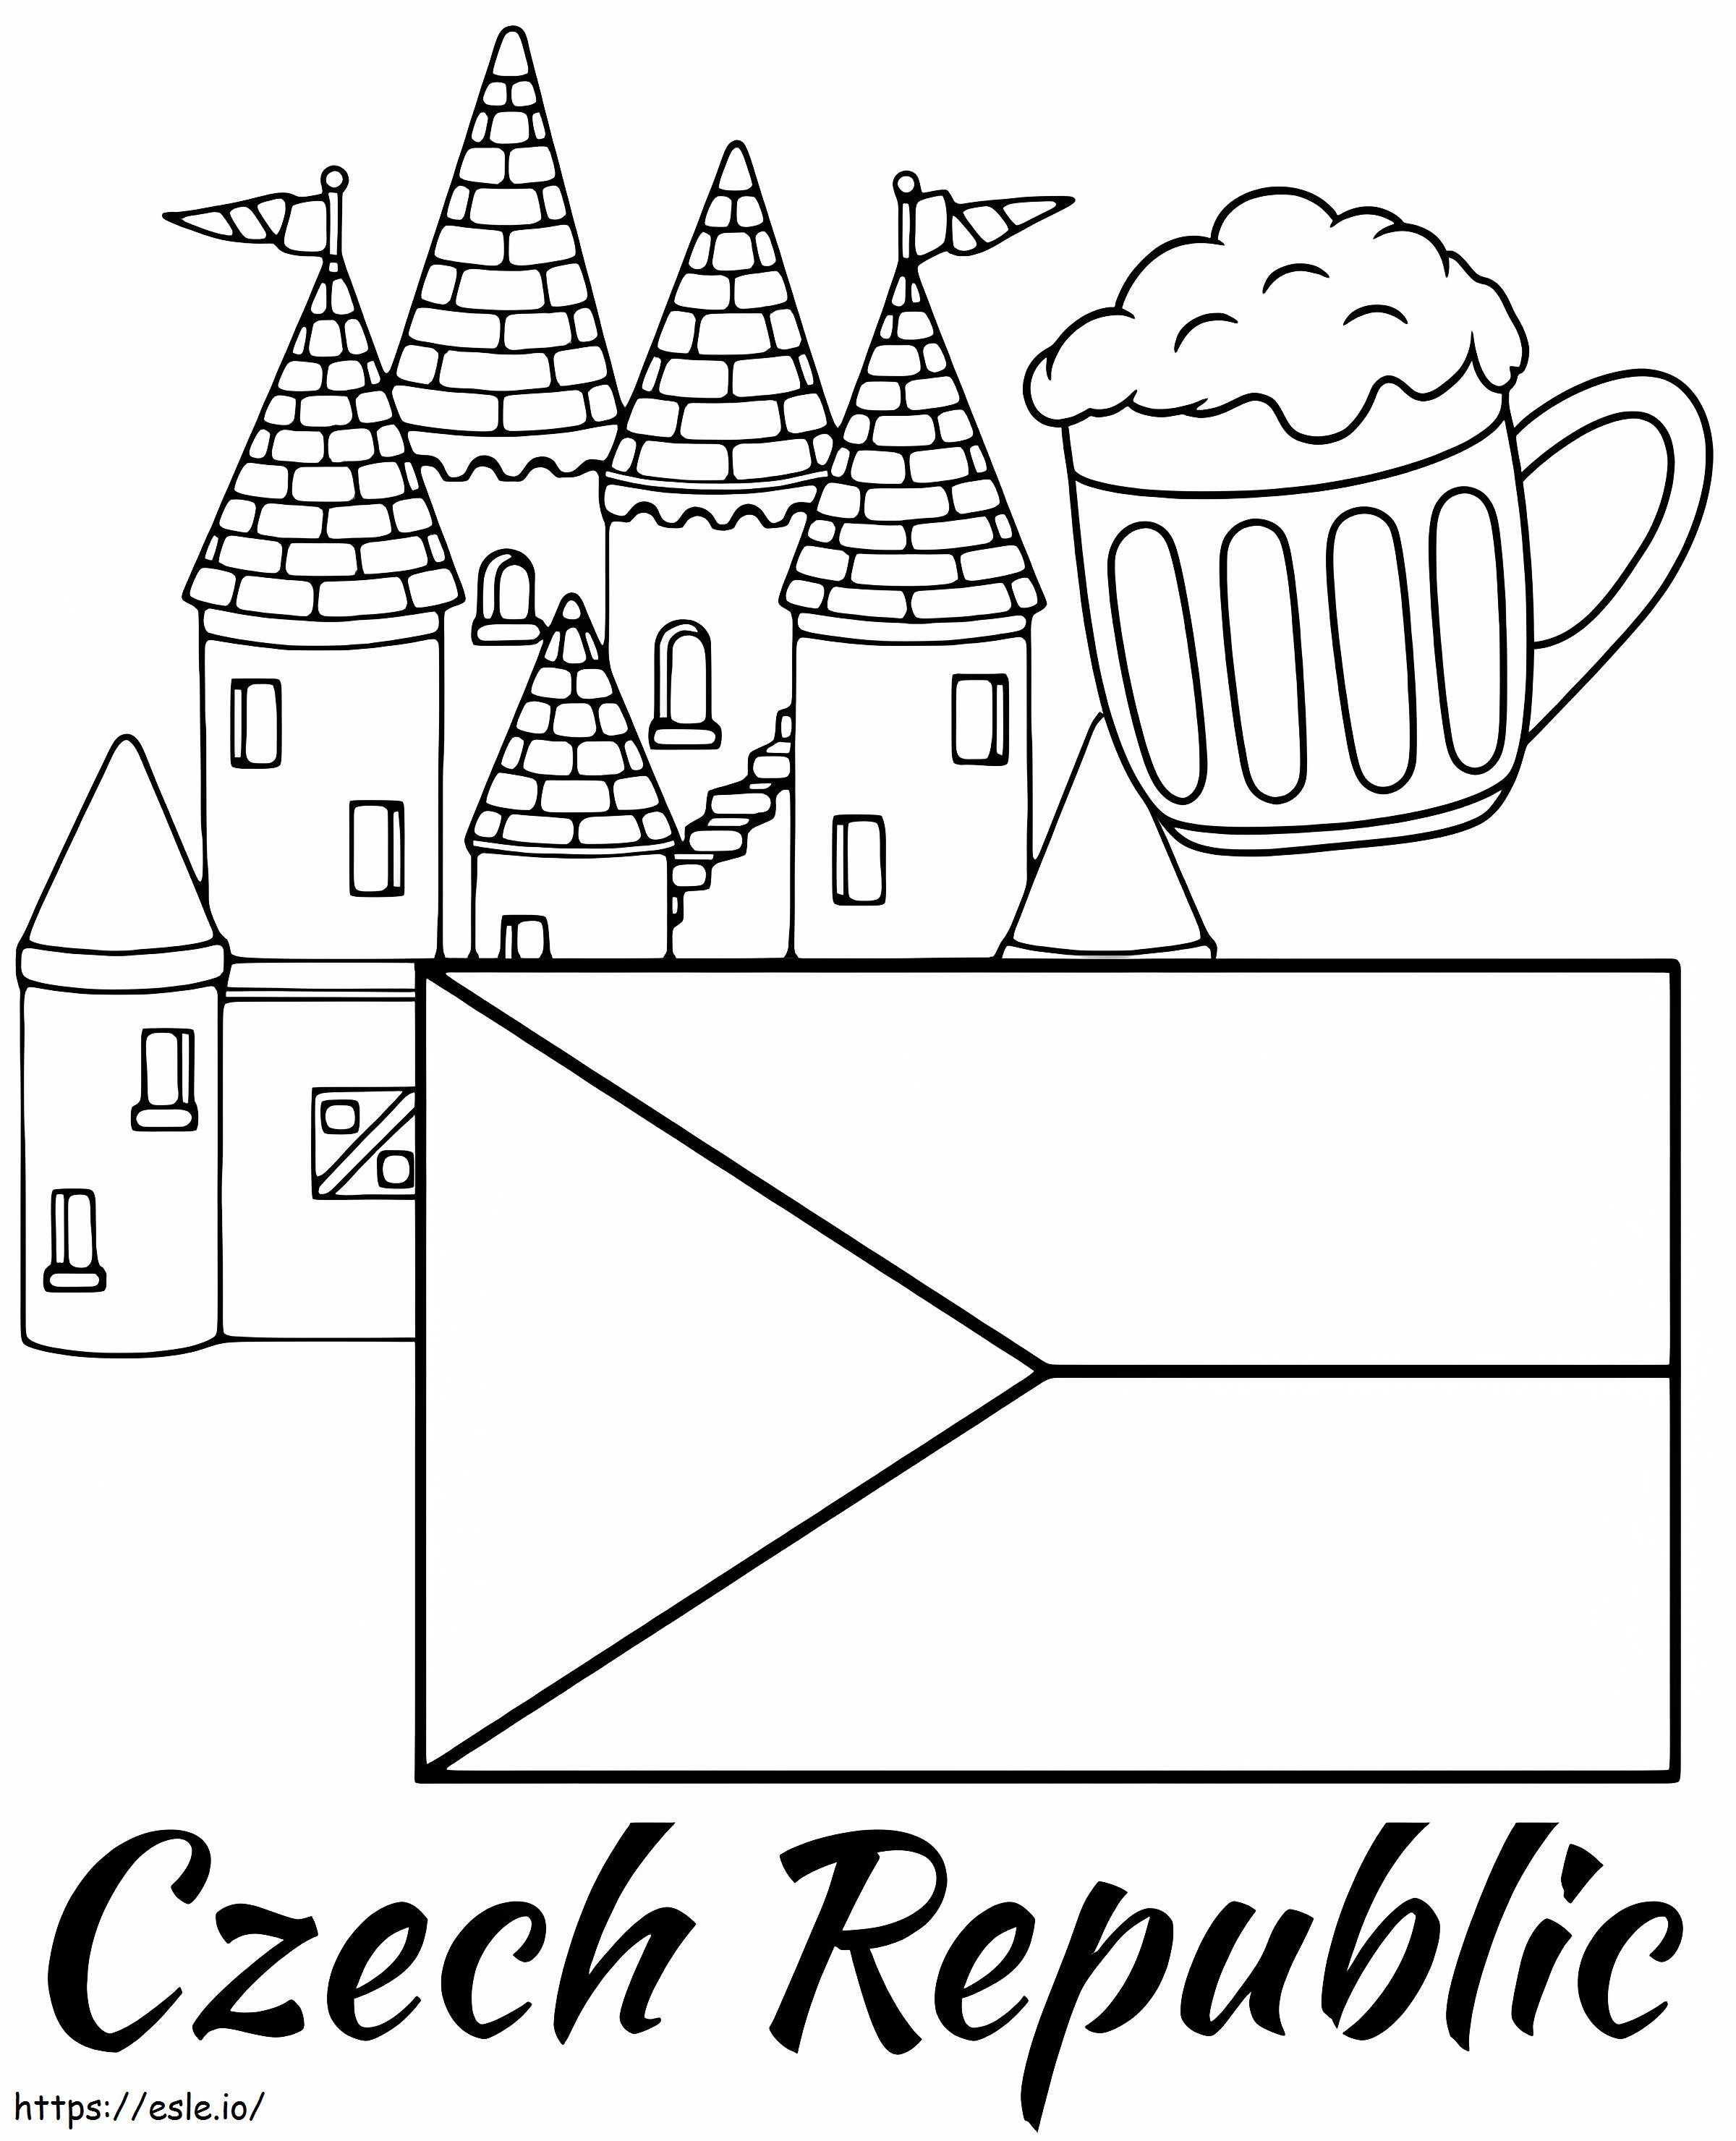 Czech Republic 1 coloring page